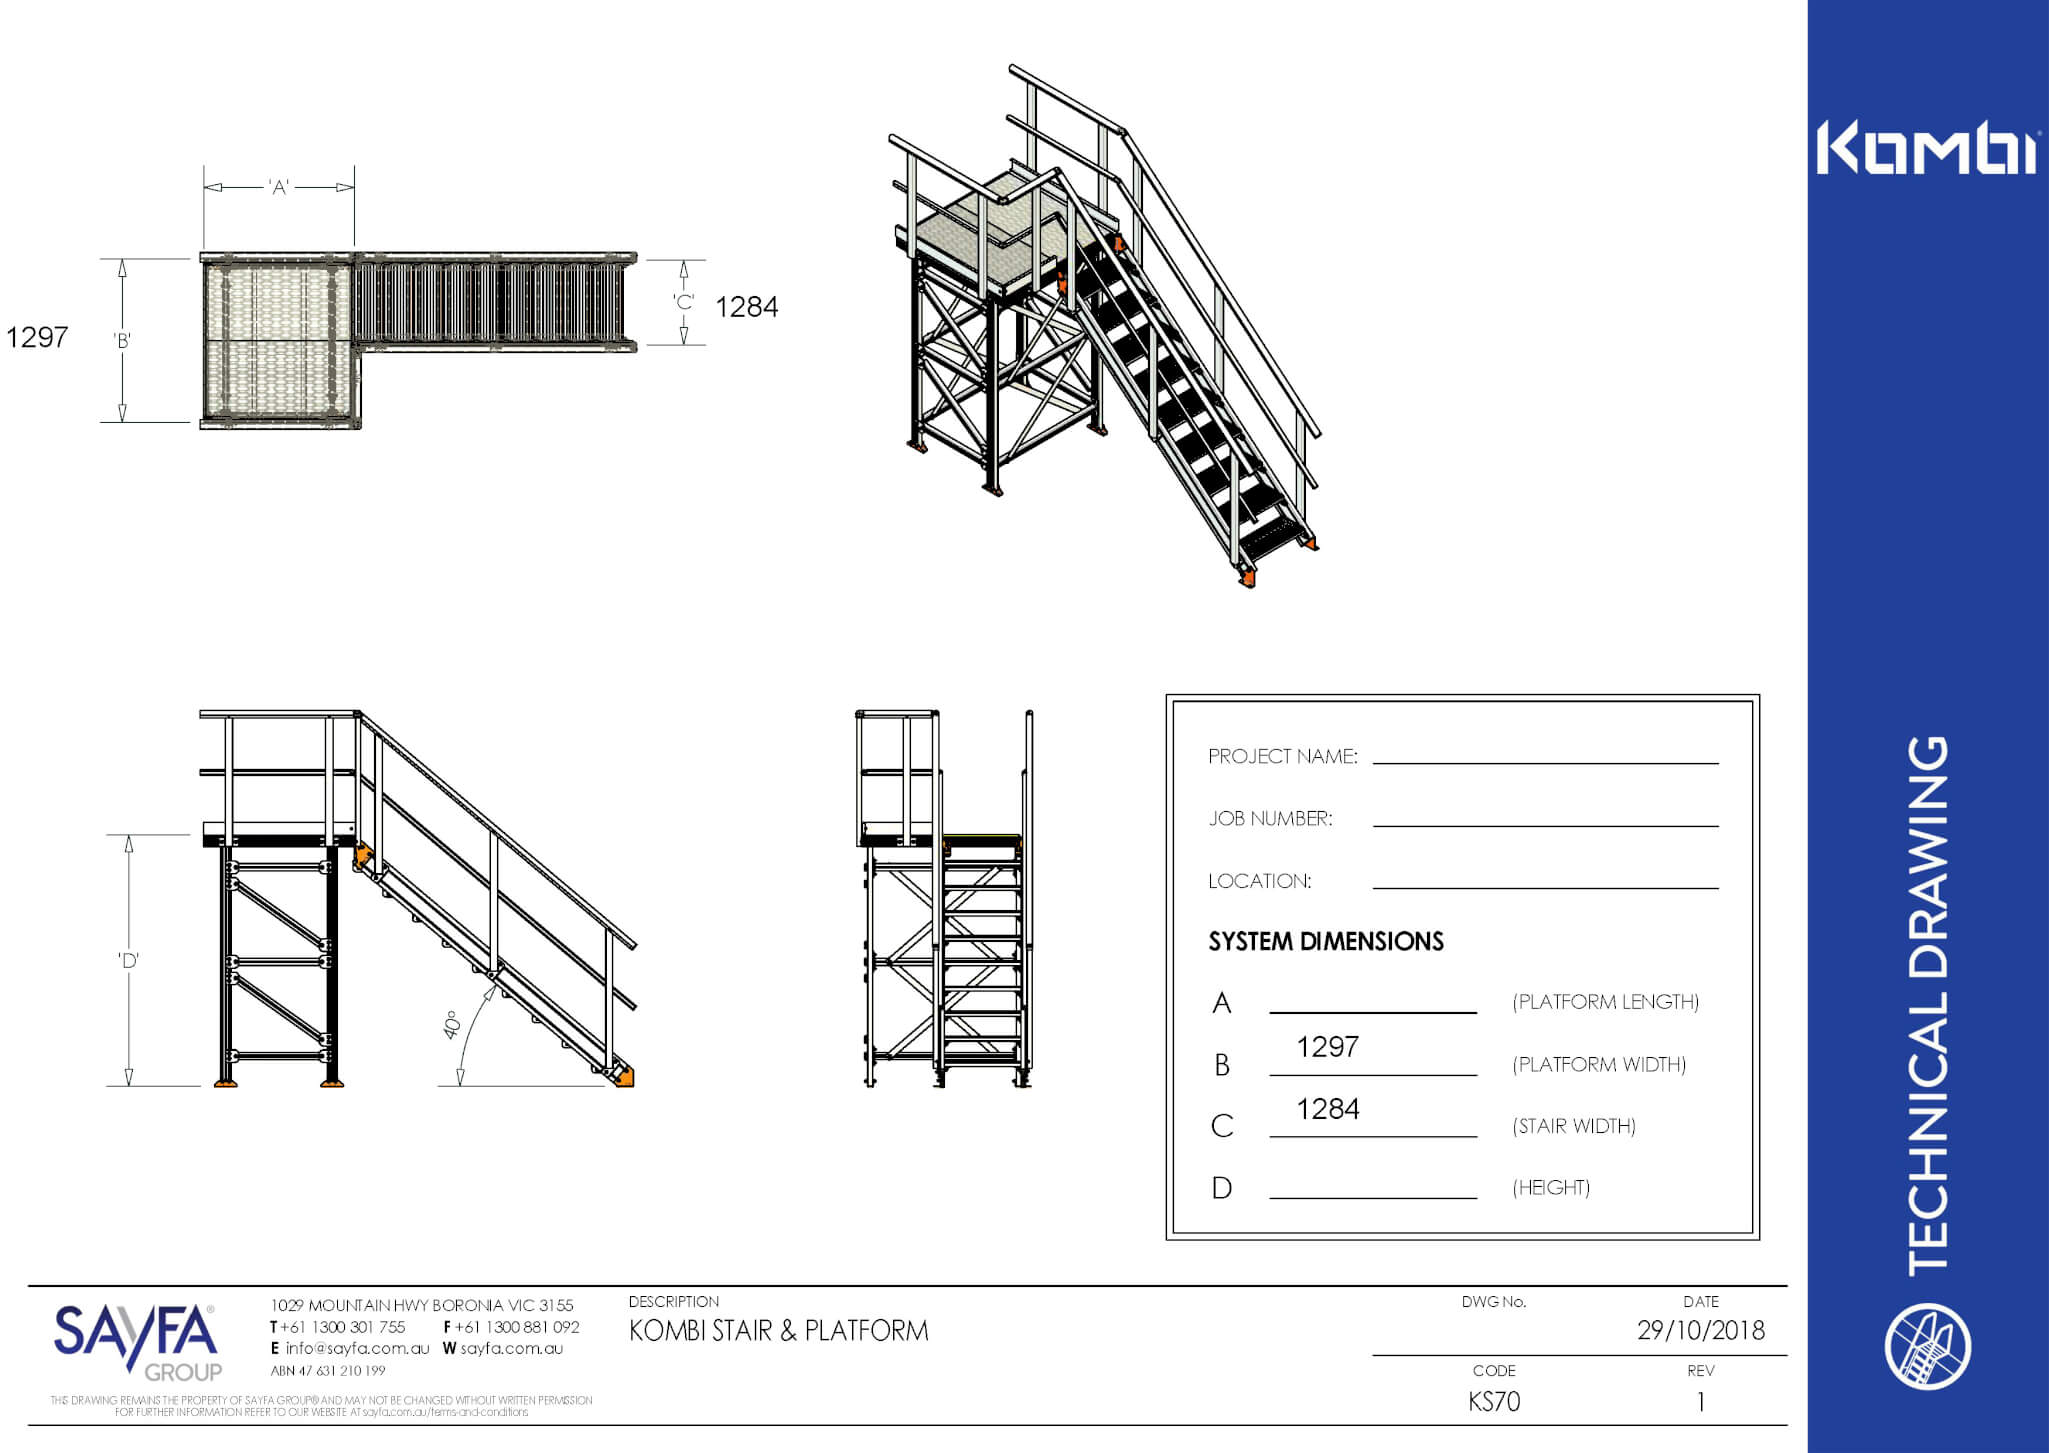 KS70 - Kombi Modular Stair and Platform - Drawing Image